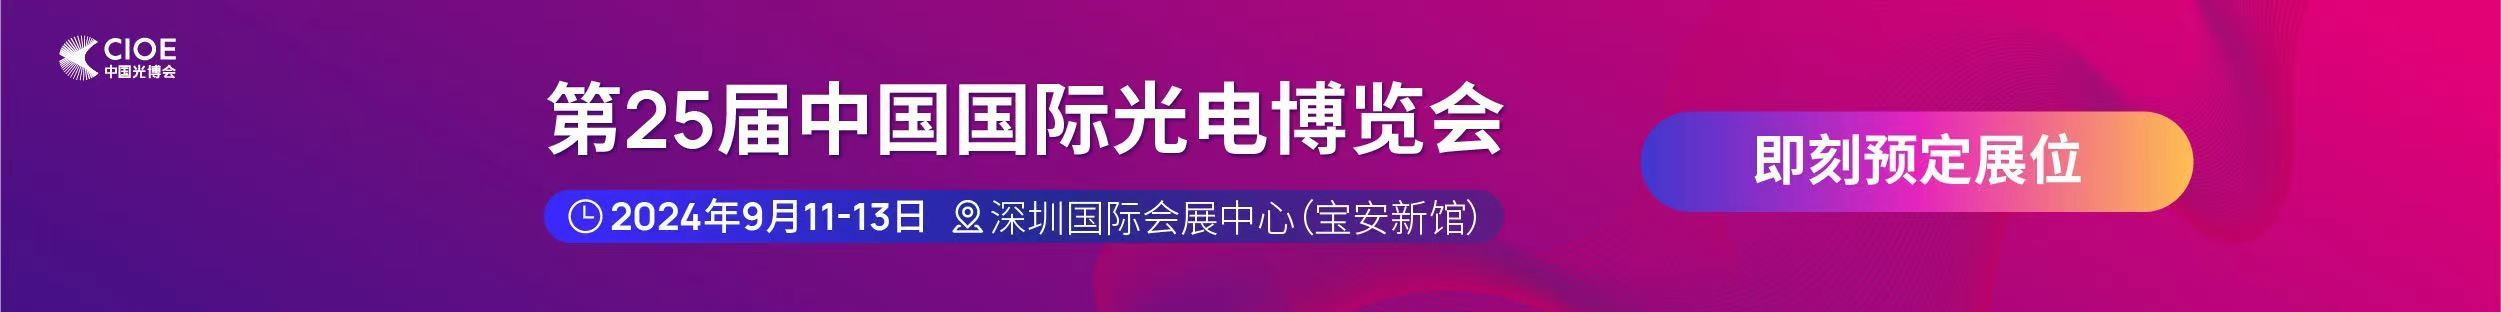 bat365官网登录入口公司受邀参展第25届中国国际光电博览会